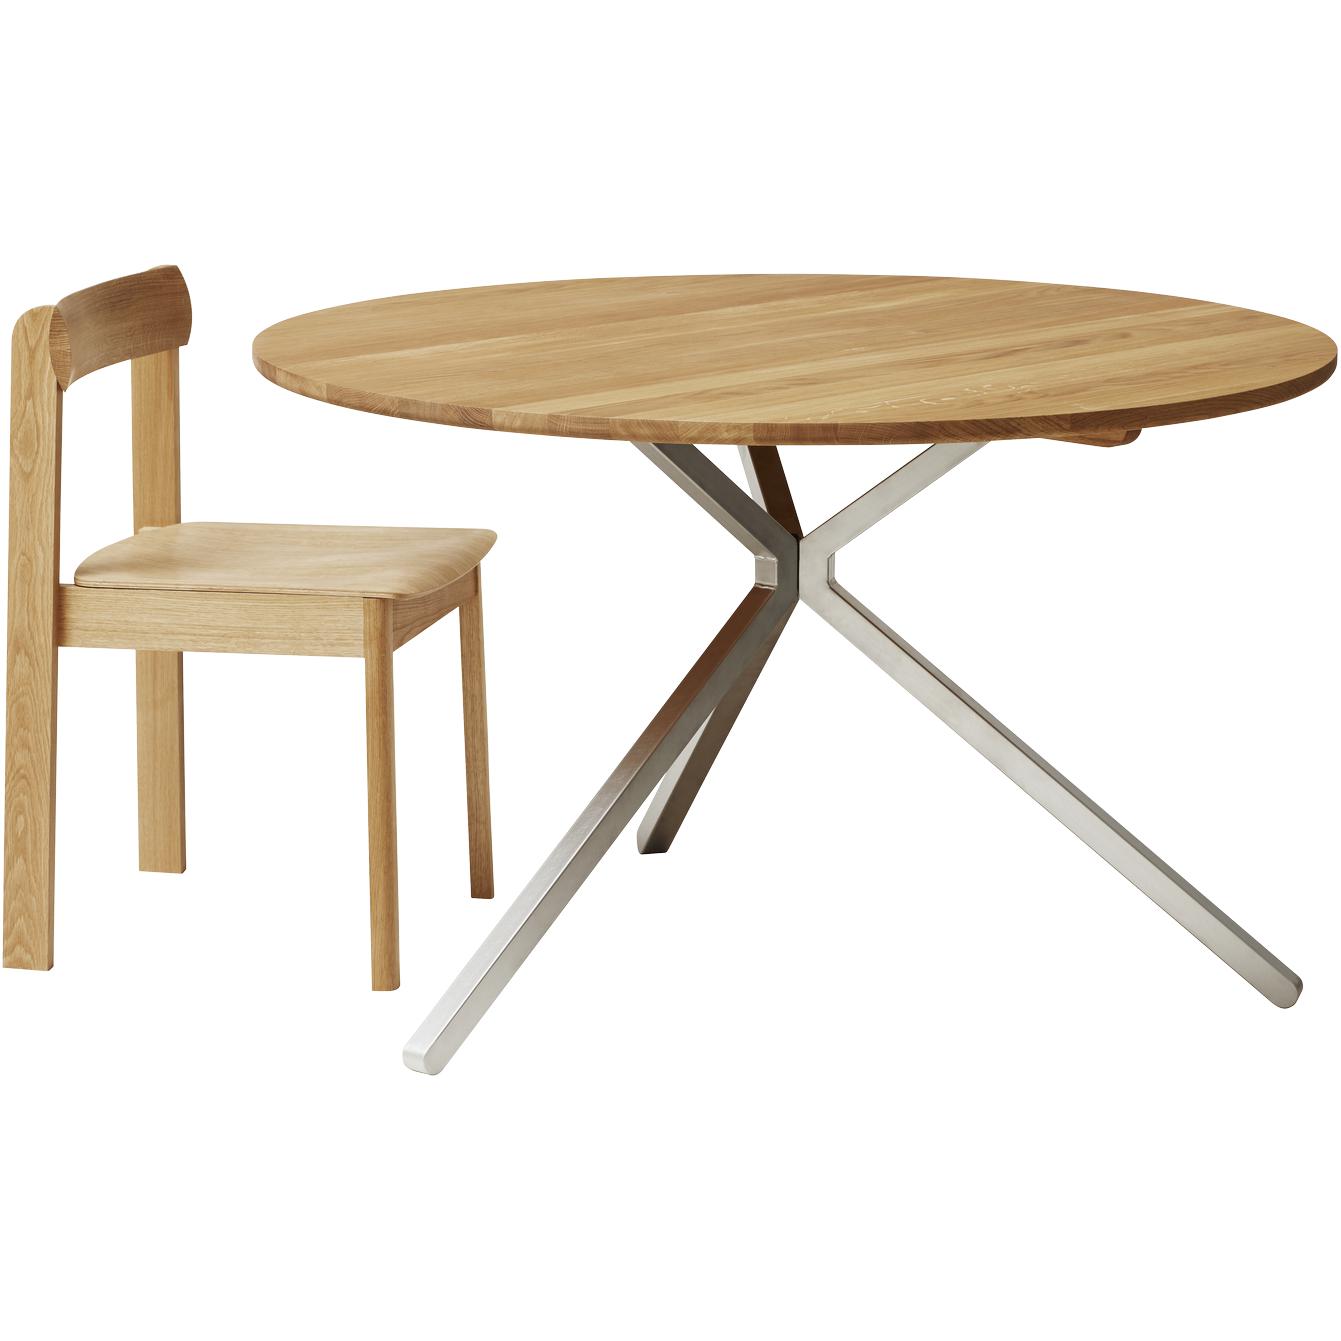 Form & Refine Table de Frisbee Ø120 cm. Chêne